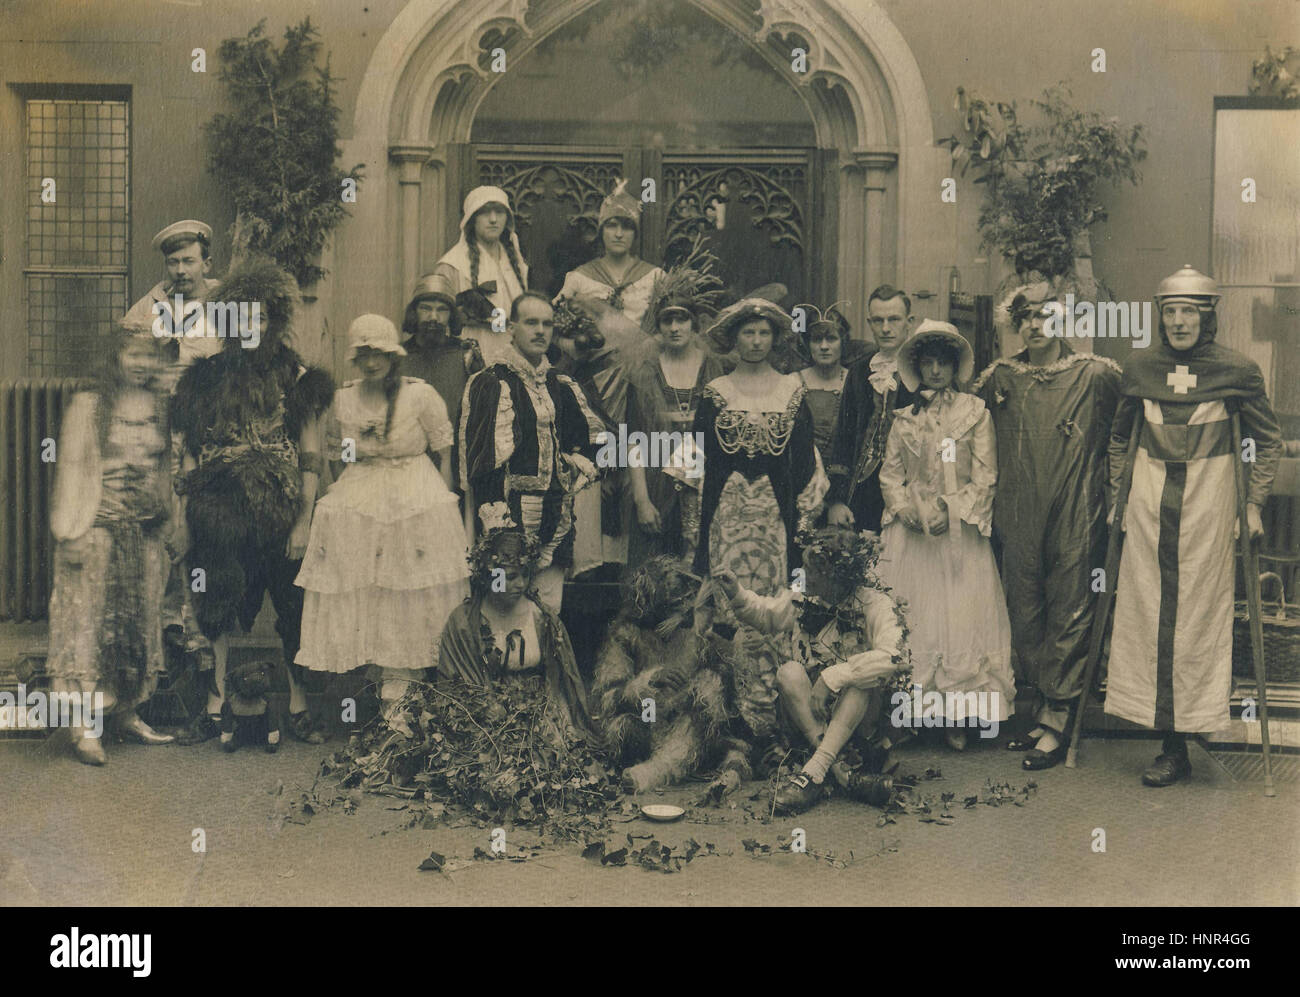 Image d'Archive du groupe de théâtre amateur le port du costume de c1910s  Photo Stock - Alamy